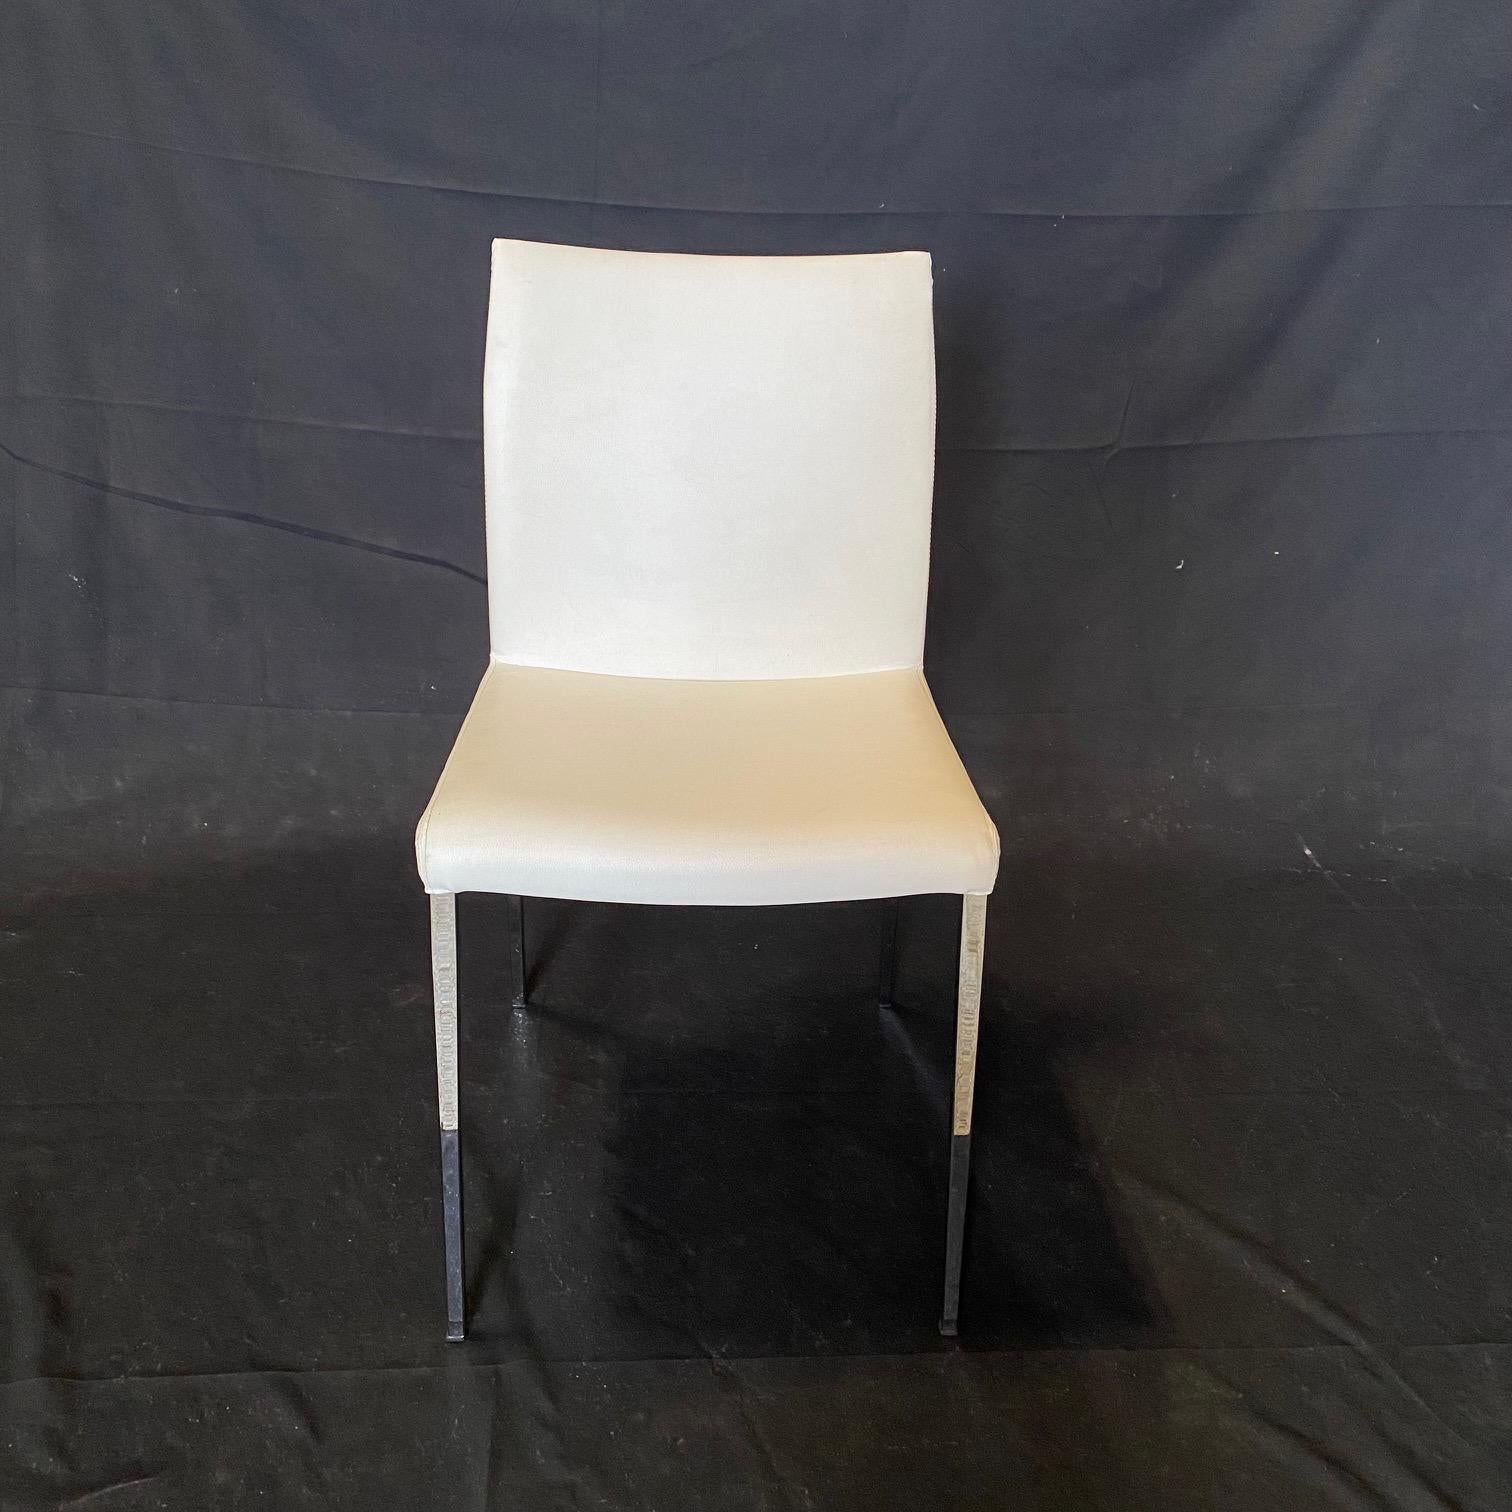 Glamurosas y elegantes sillas de comedor vintage tapizadas en piel blanca, de Cattelan Italia. Cómodo con cuero bien cosido. Las sillas están bellamente diseñadas y fabricadas con materiales de calidad. Las patas cromadas son finas y elegantes.
